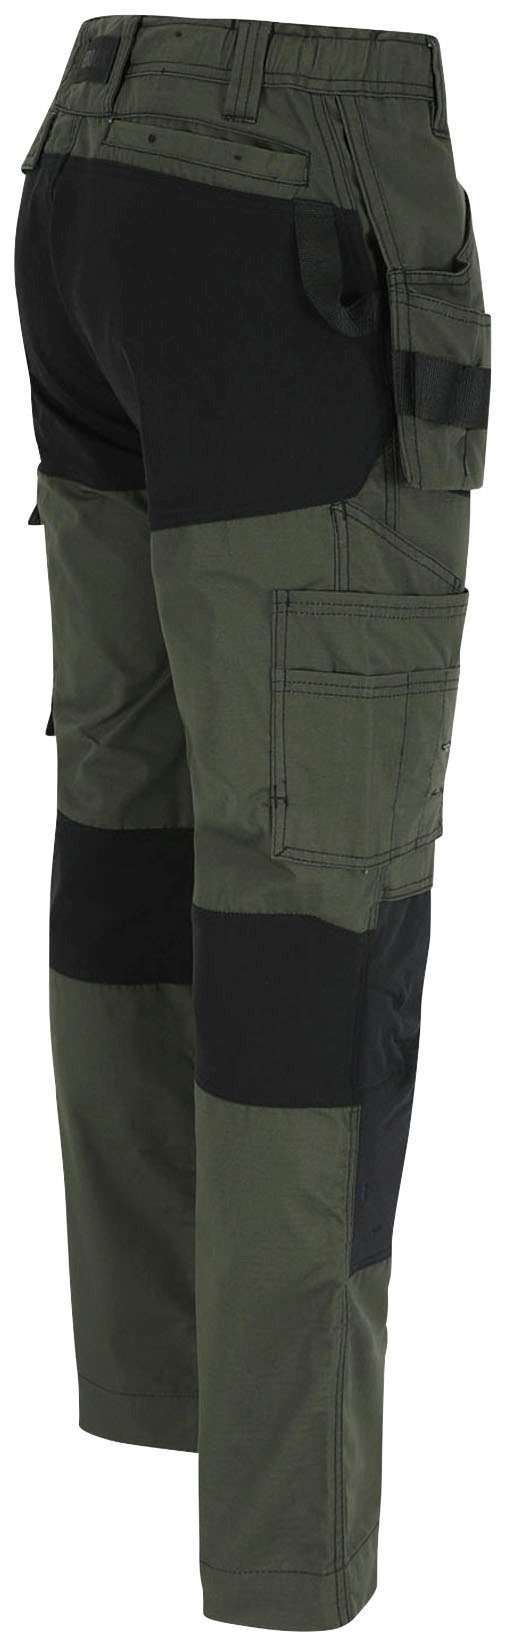 Herock Arbeitshose Spector Hose und Nageltaschen mit festen 4-Wege-Stretch-Teilen khaki 2 Multi-Pocket-Hose